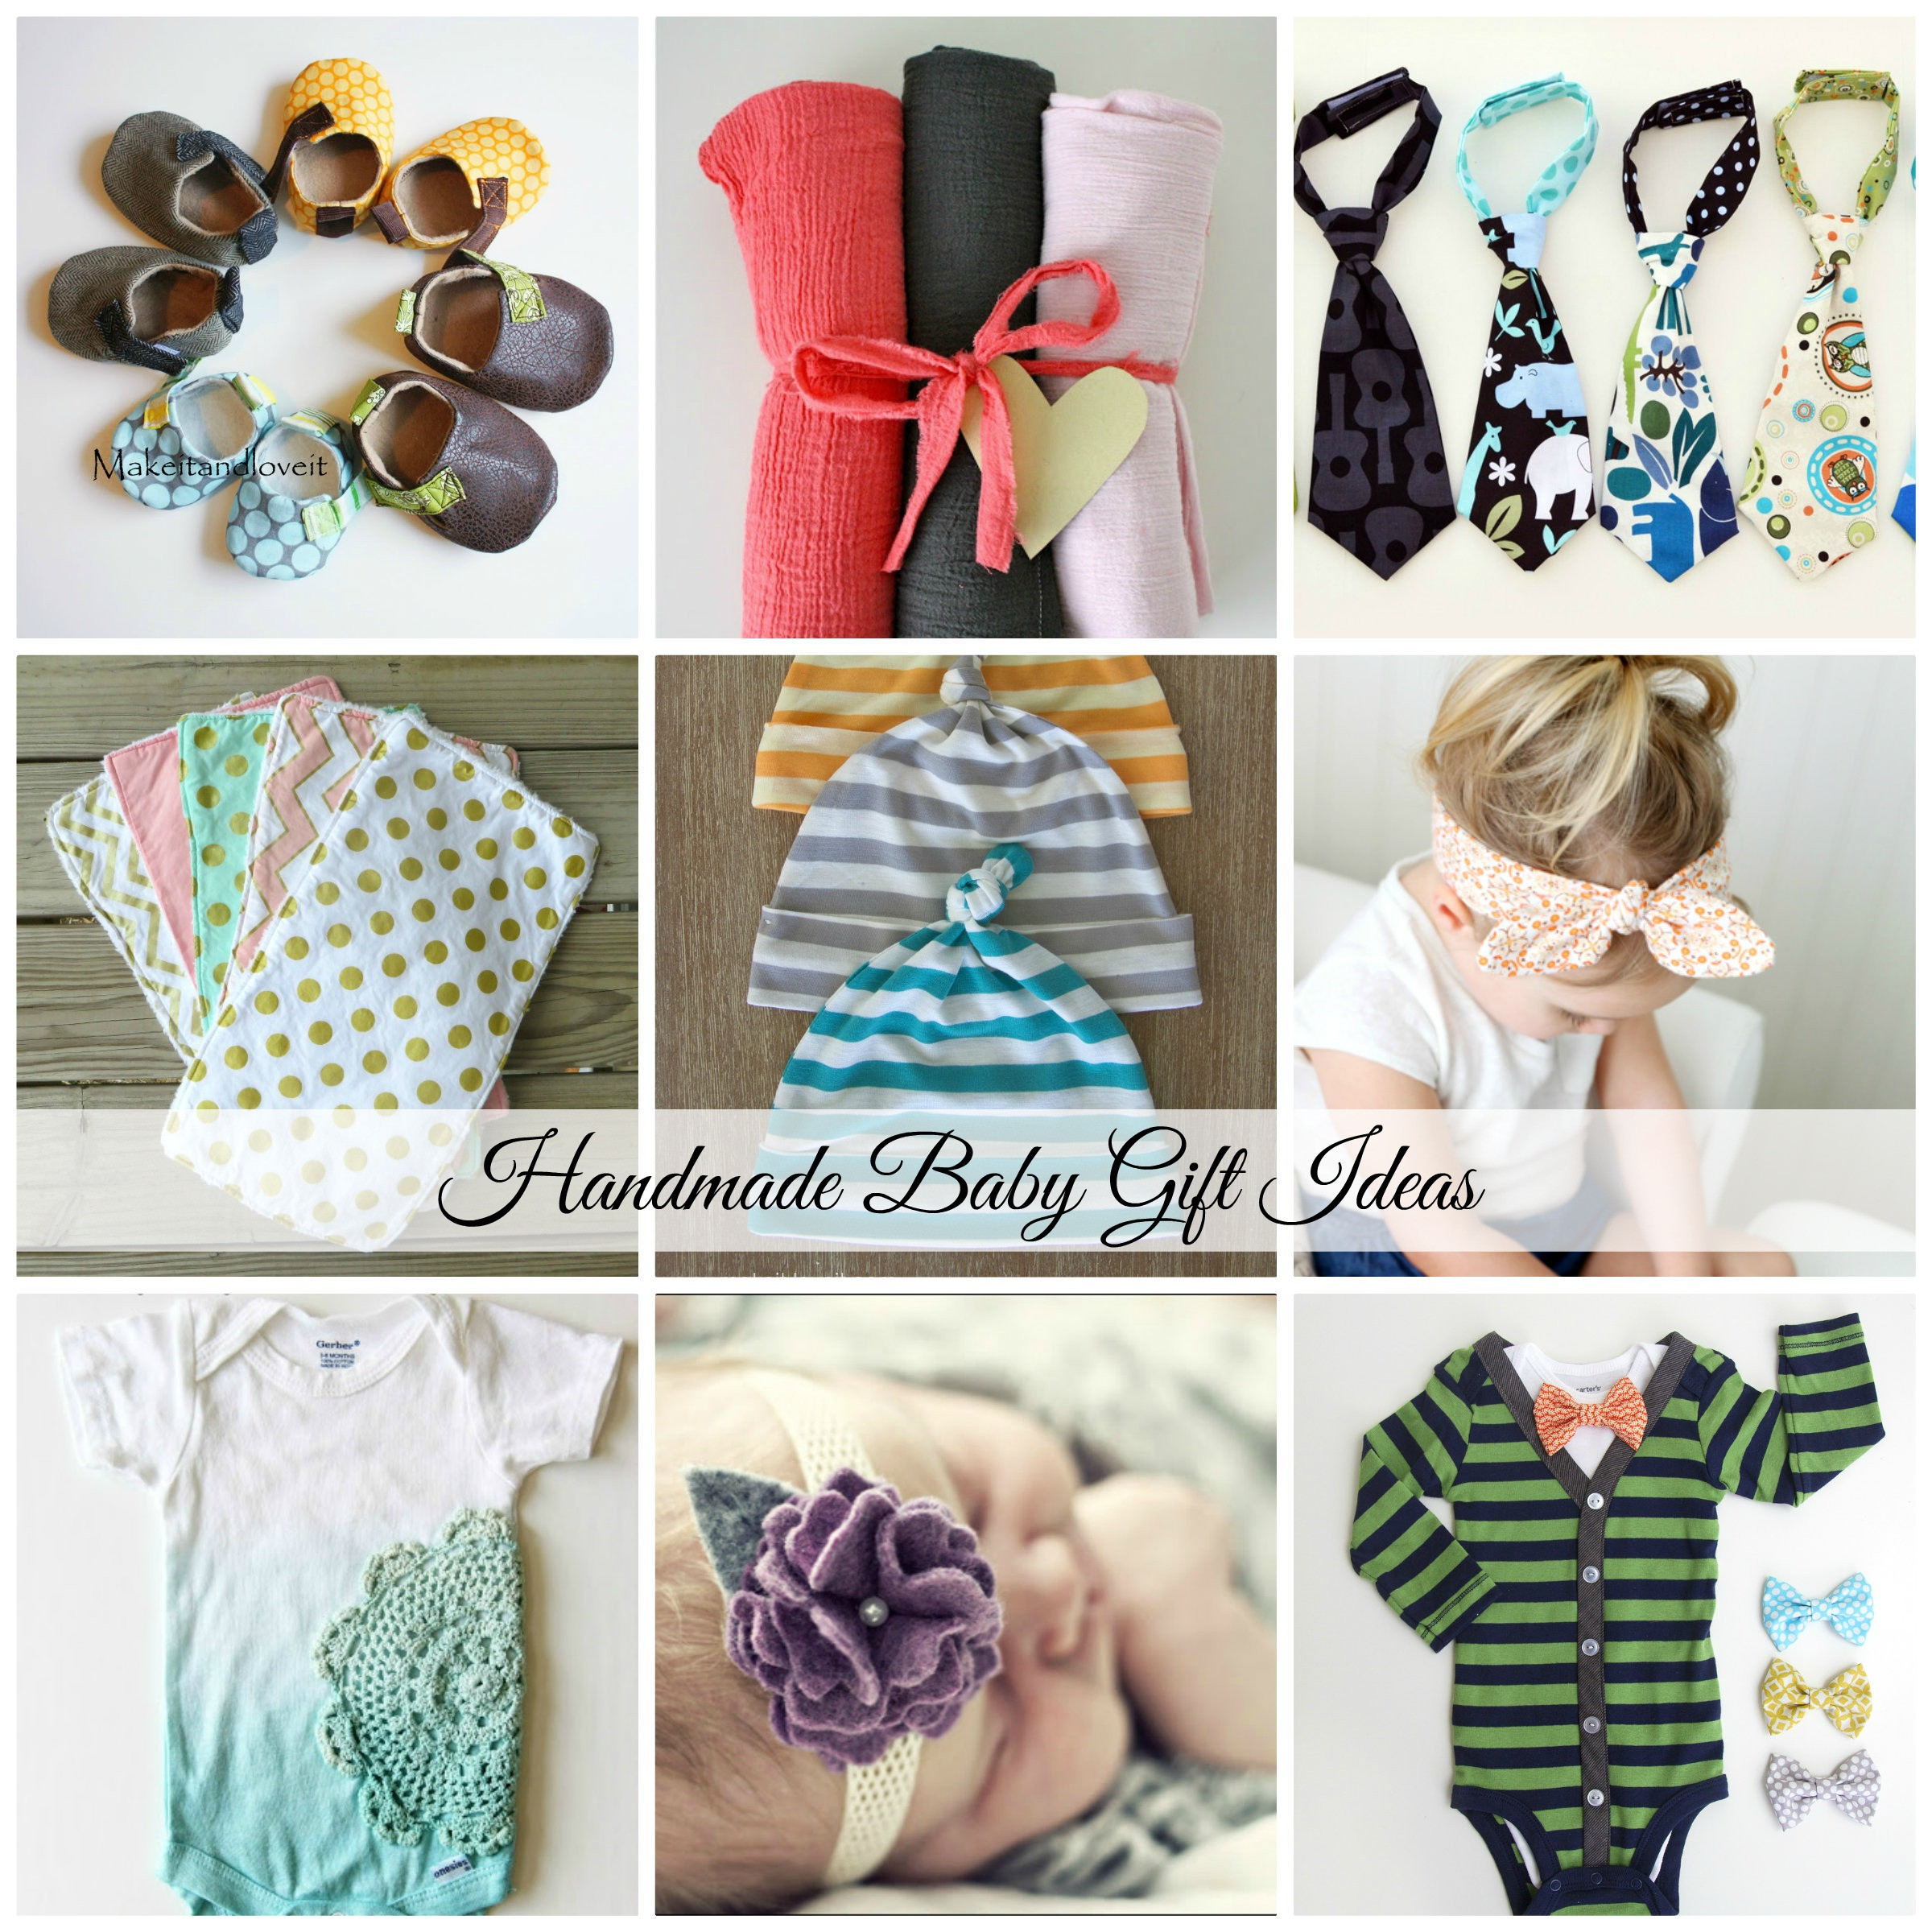 Handmade Baby Gift Ideas
 Handmade Baby Gift Ideas